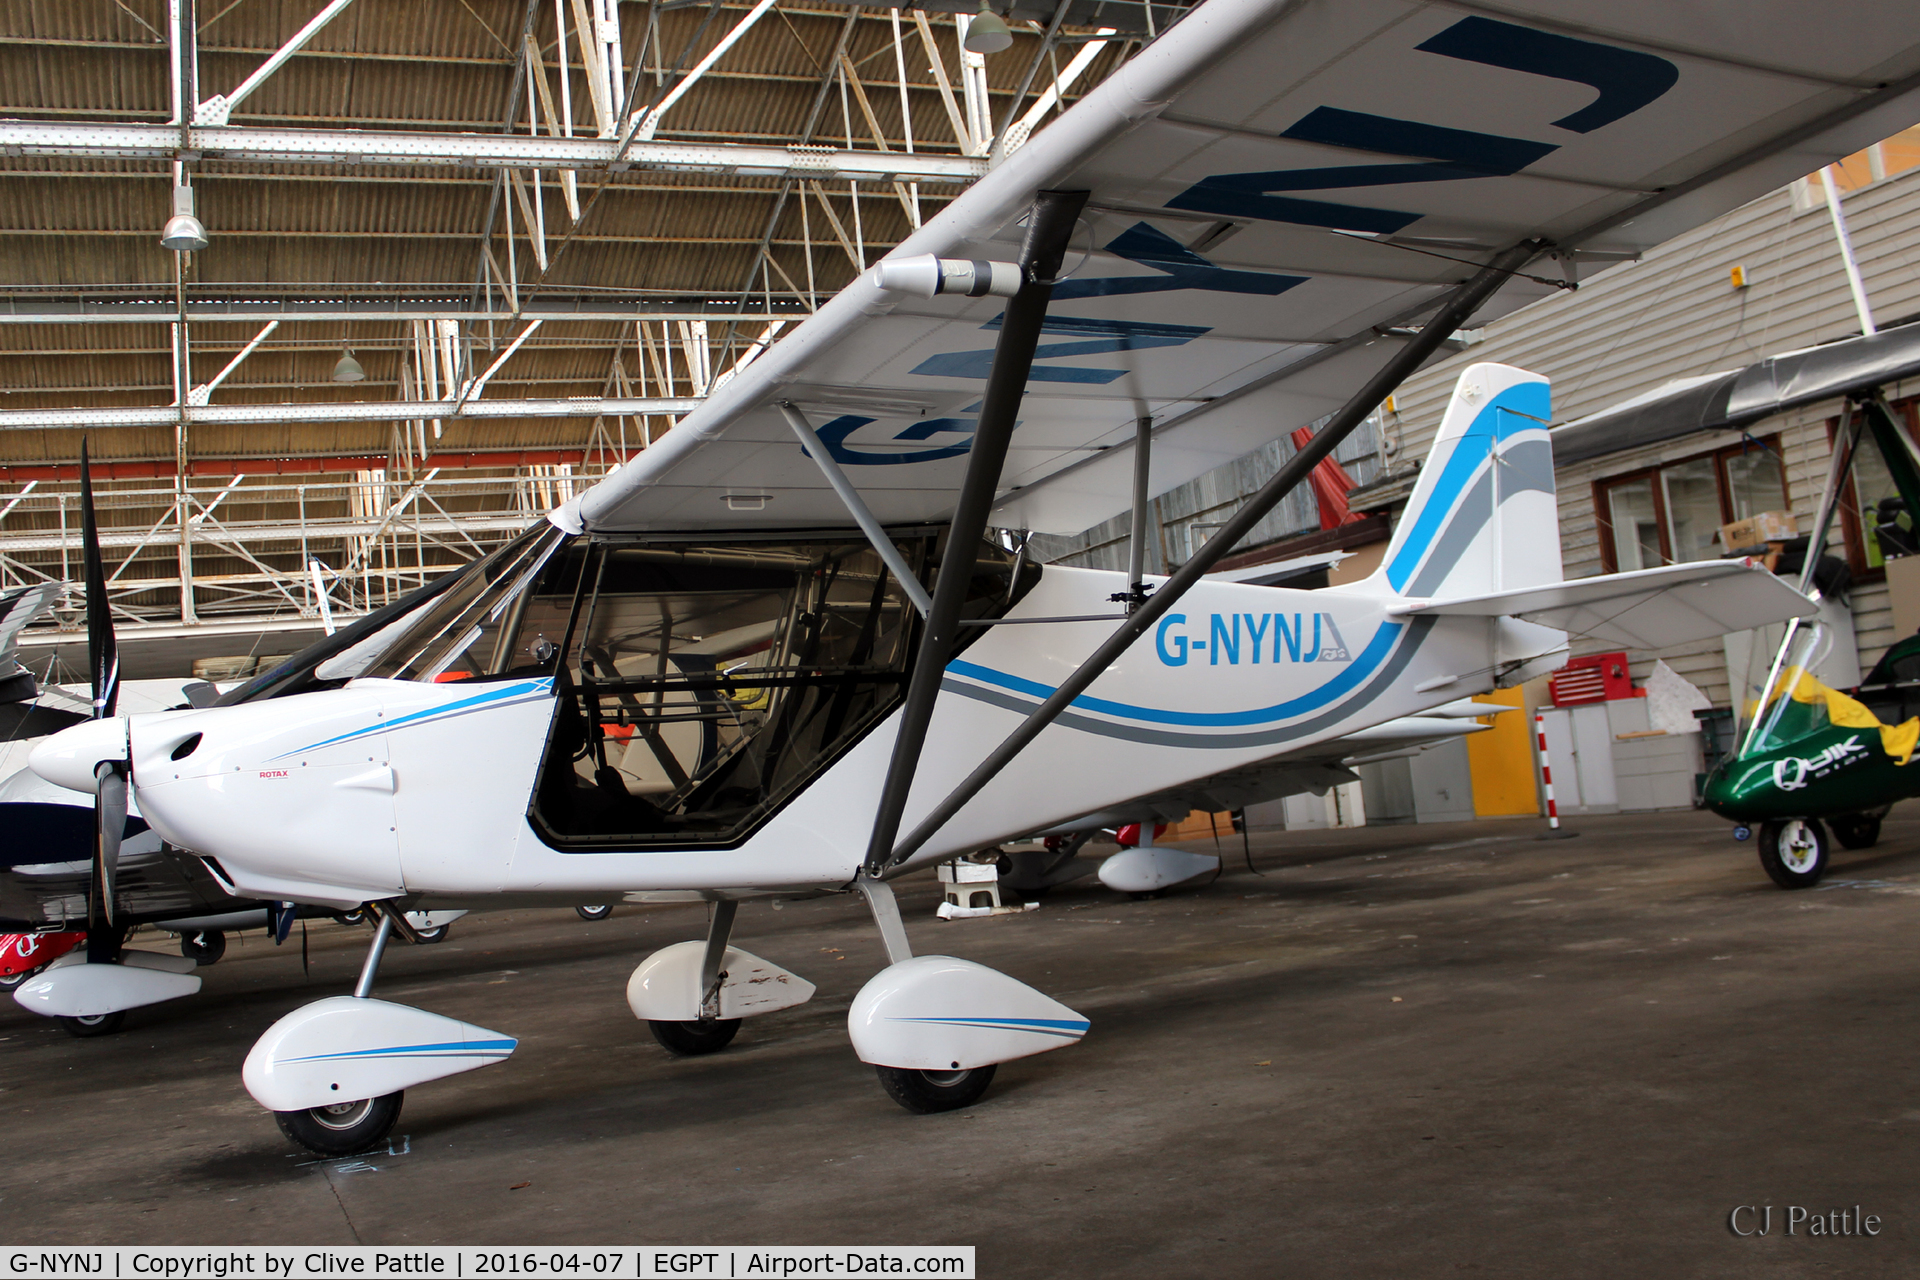 G-NYNJ, 2013 Skyranger Nynja 912S(1) C/N BMAA/HB/643, Hangared at Perth (Scone) airfield EGPT